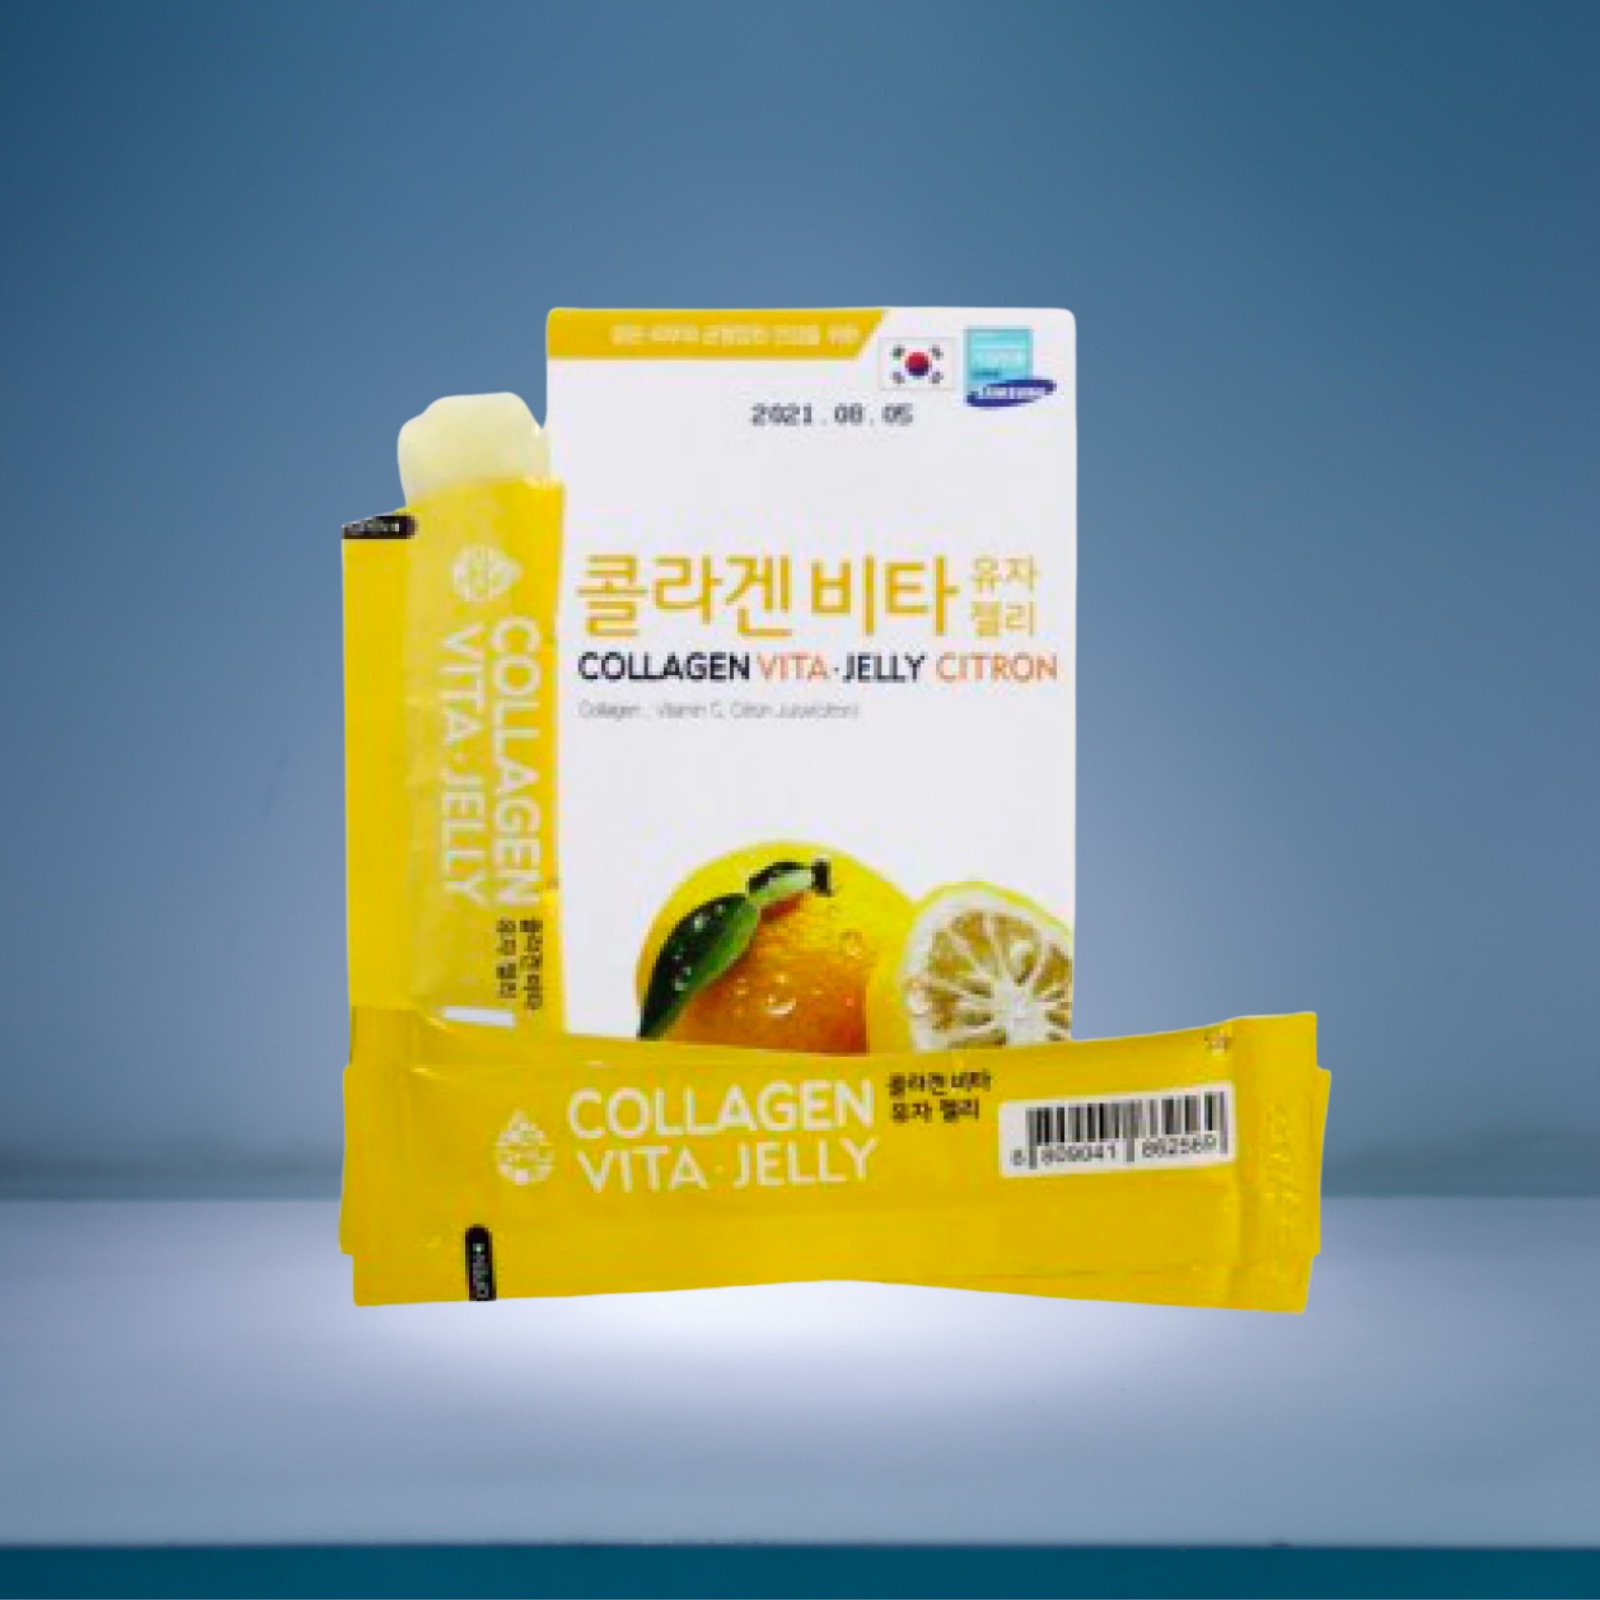 Korea Citron Collagen Jelly Vitamin C Booster